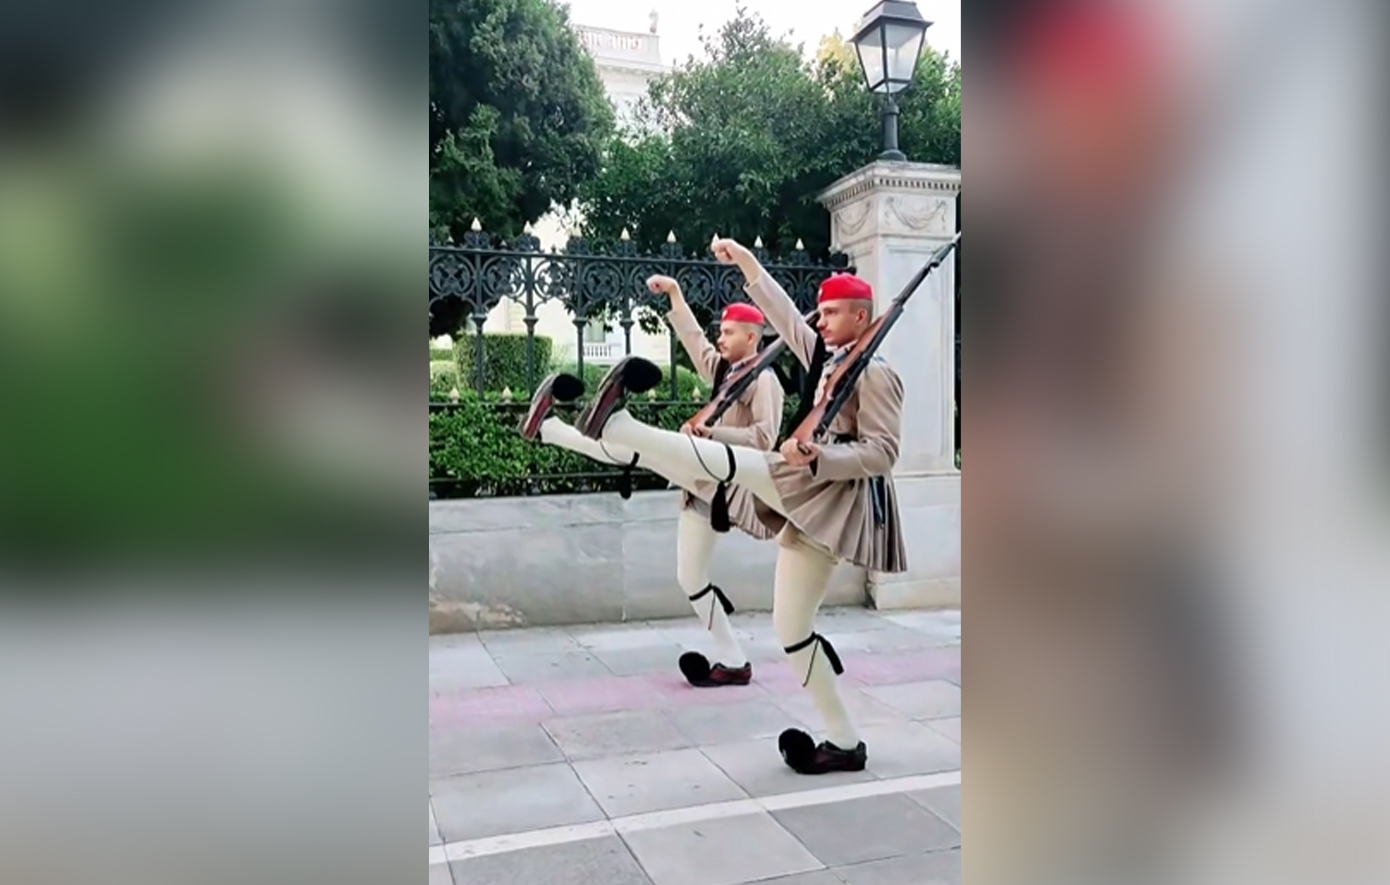 Βίντεο με την αλλαγή της Προεδρικής Φρουράς στην Αθήνα έγινε viral στο TikTok – «Είναι καταπληκτικό»